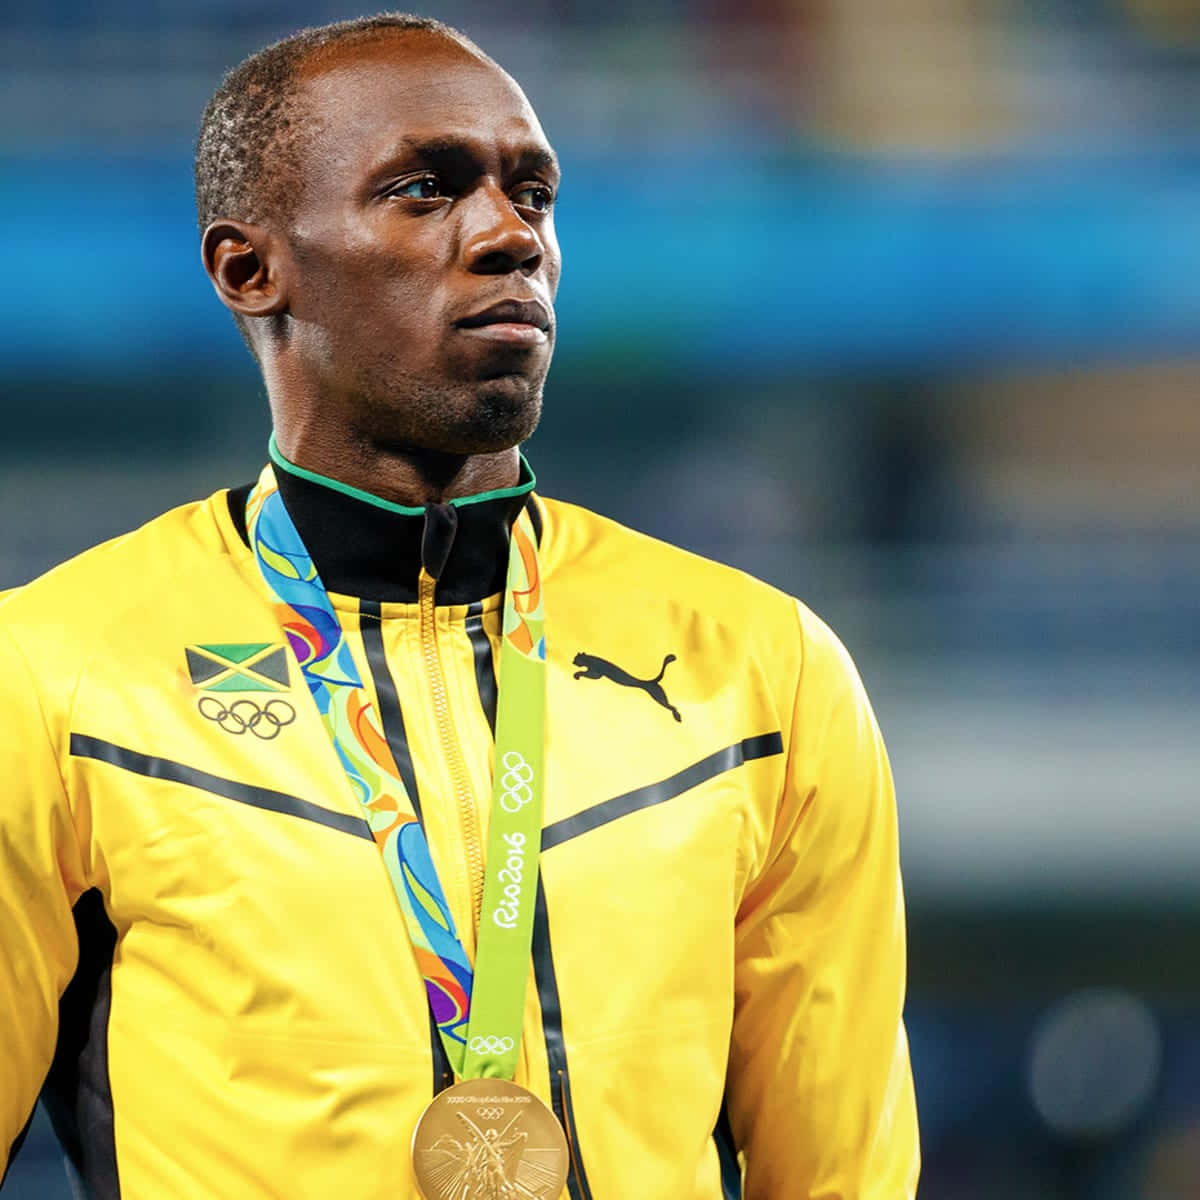 Atletajamaiquino Usain Bolt Luciendo Determinado Fondo de pantalla